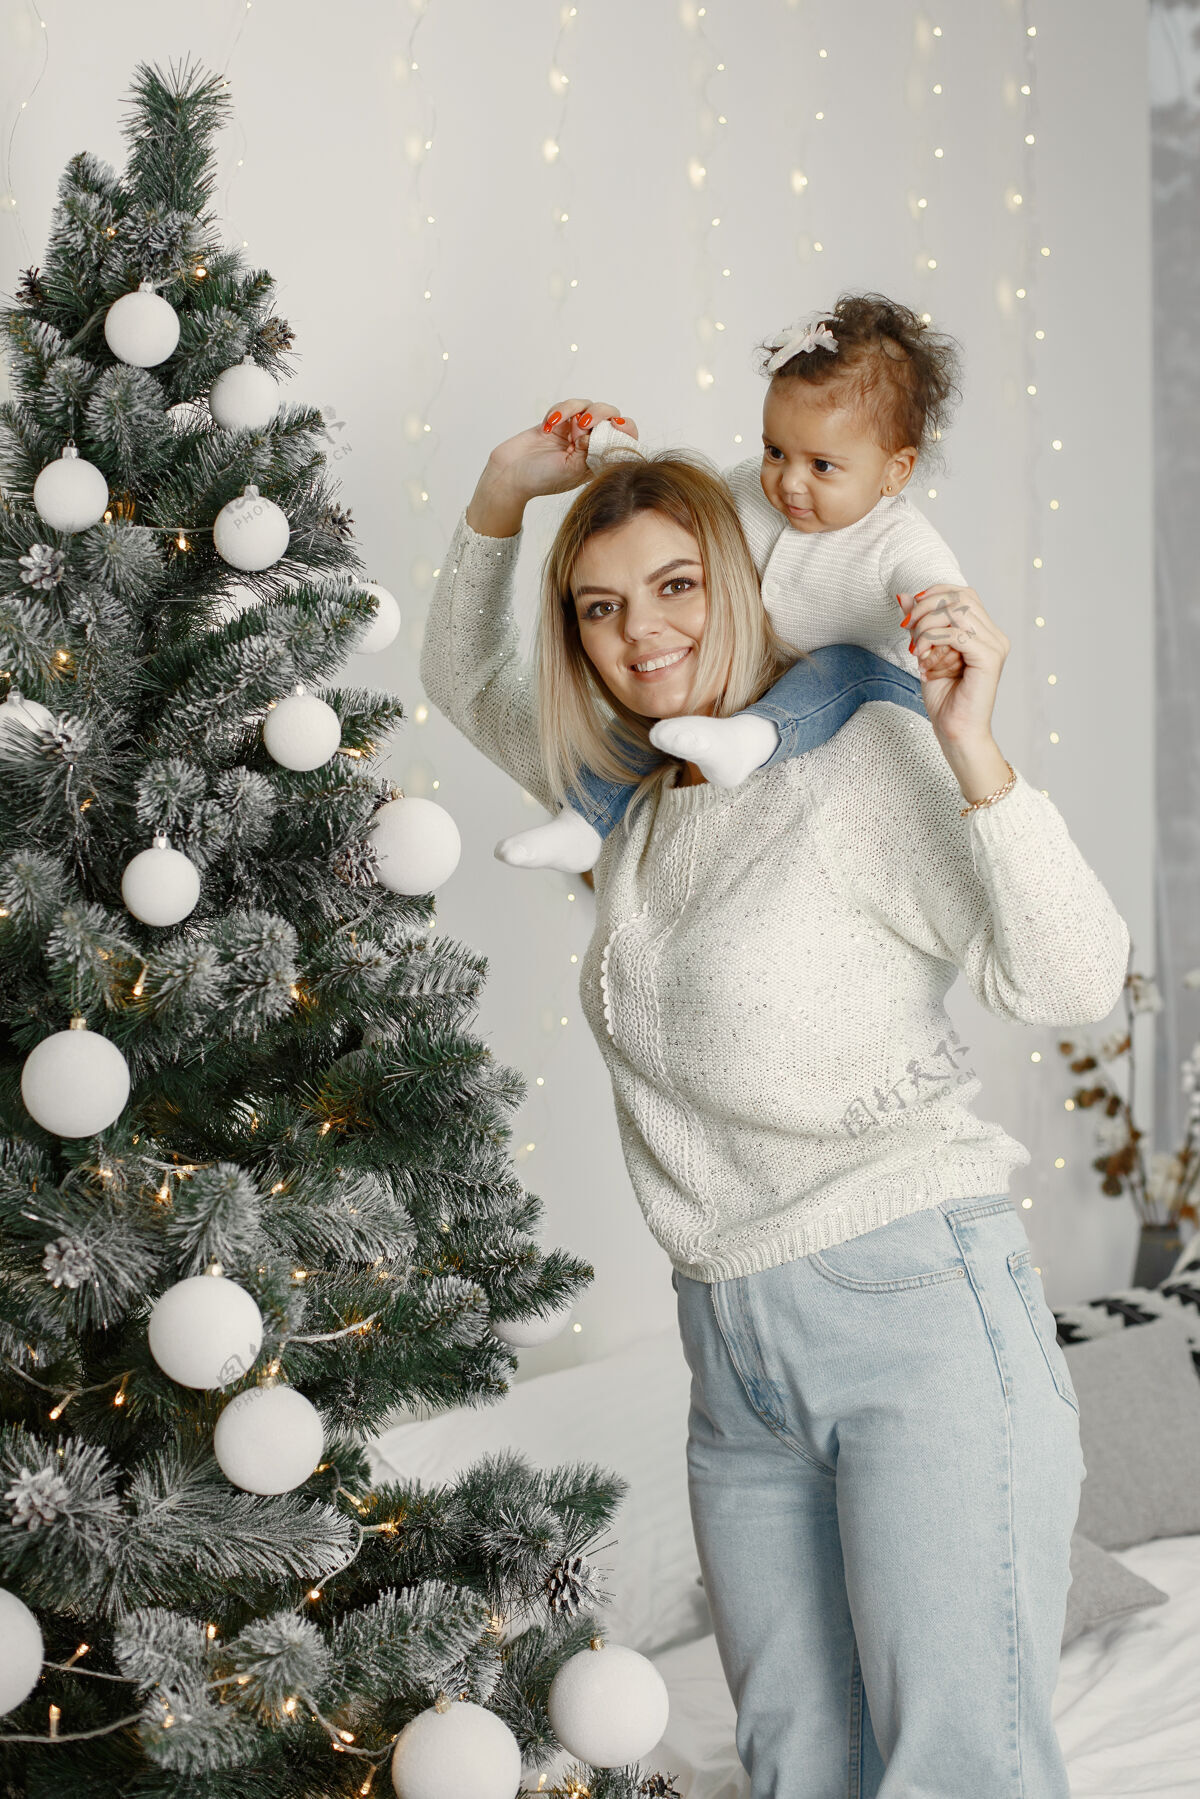 毛衣人们在为圣诞节做准备母亲在和女儿玩耍一家人在节日的房间里休息孩子穿着毛衣花环小国际